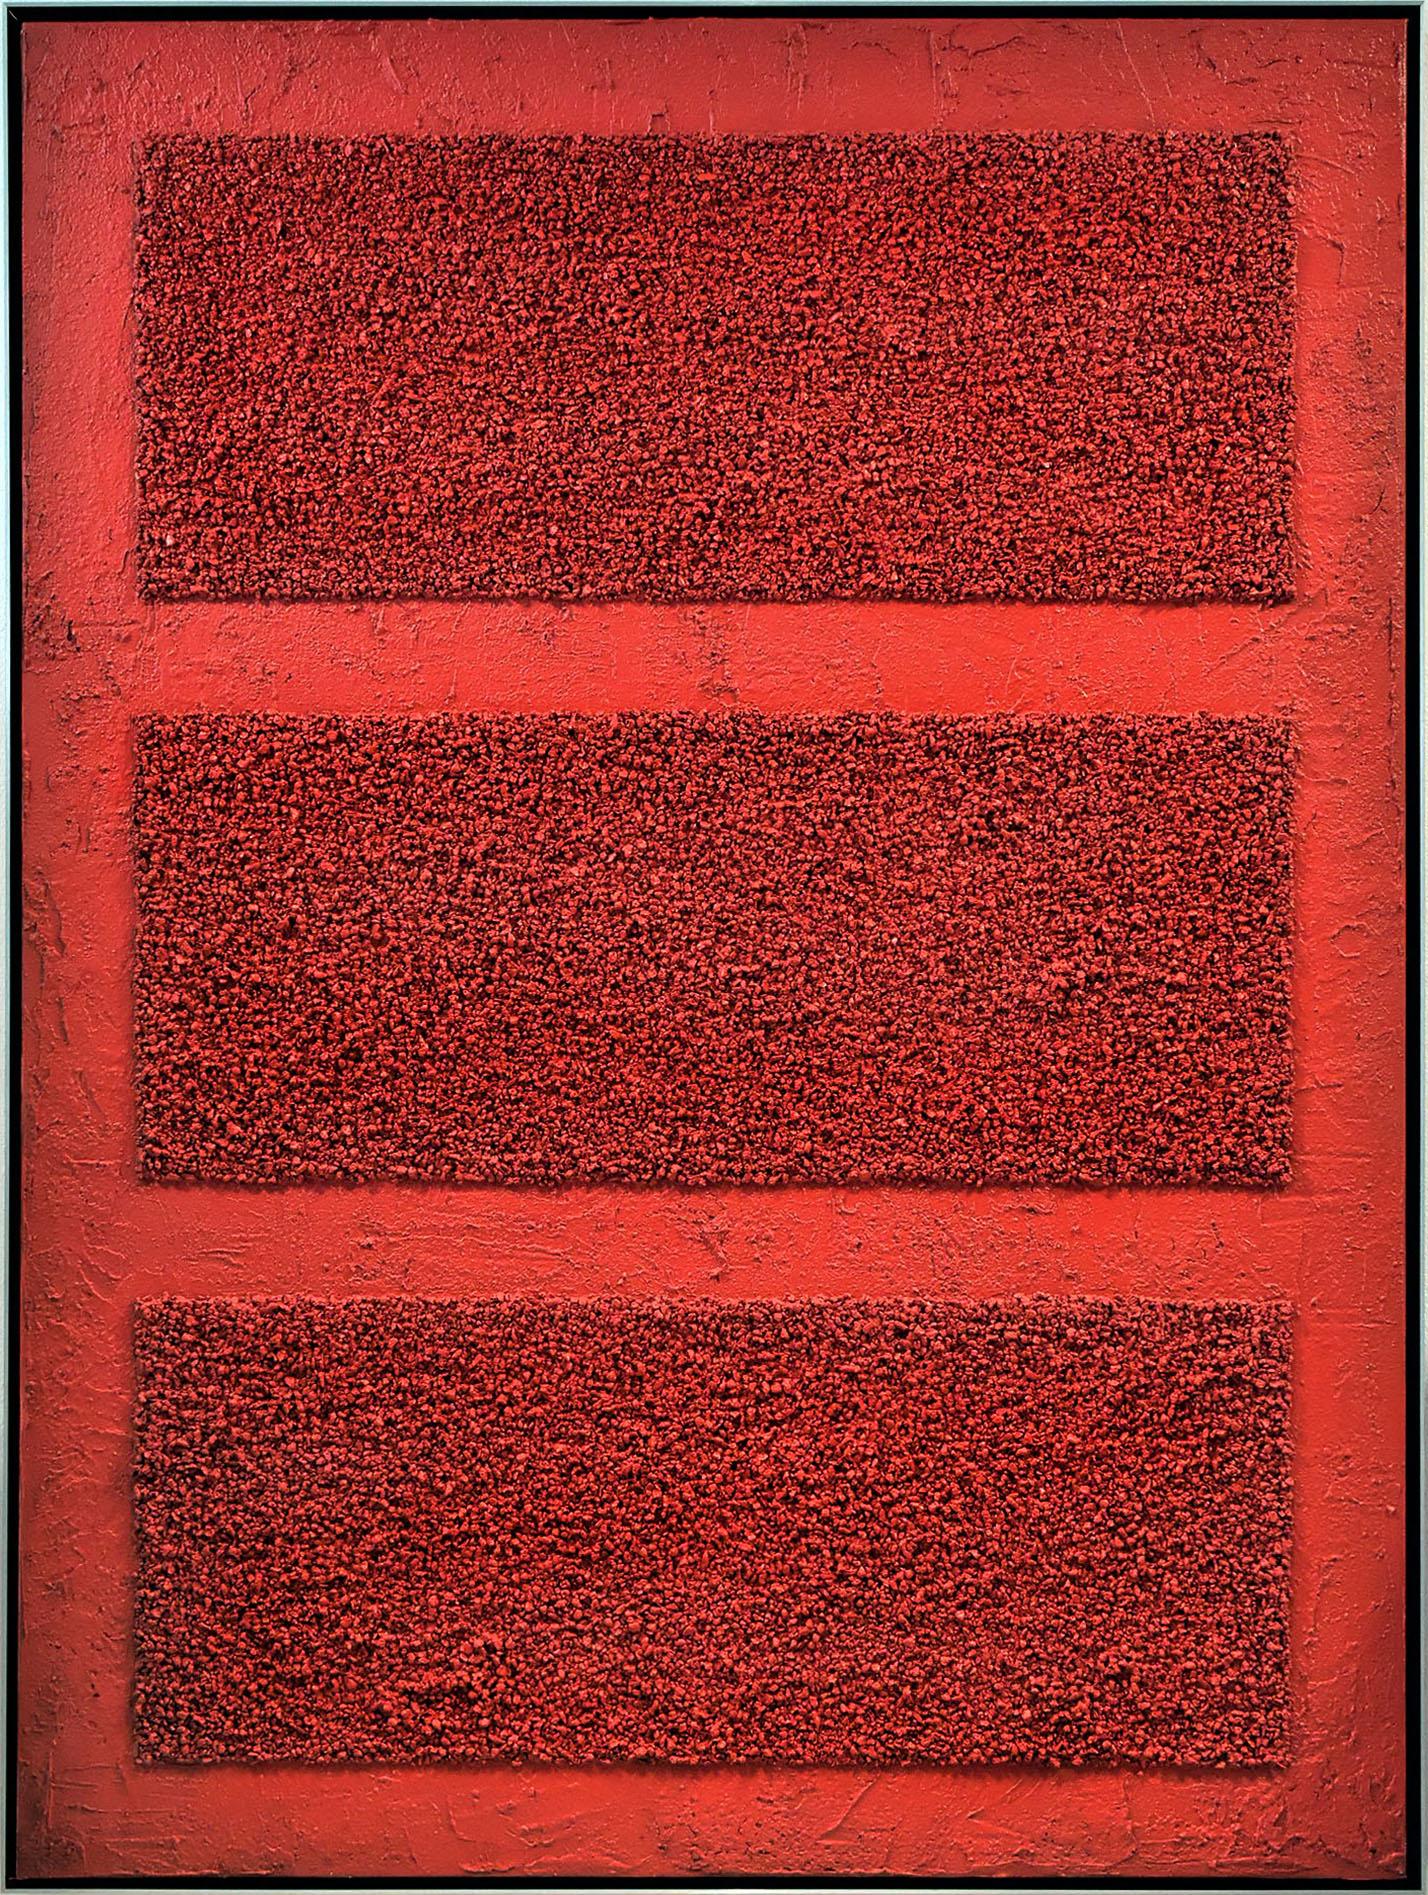 Benjamin Birillo Jr. Abstract Painting – Rote Stäbe 2